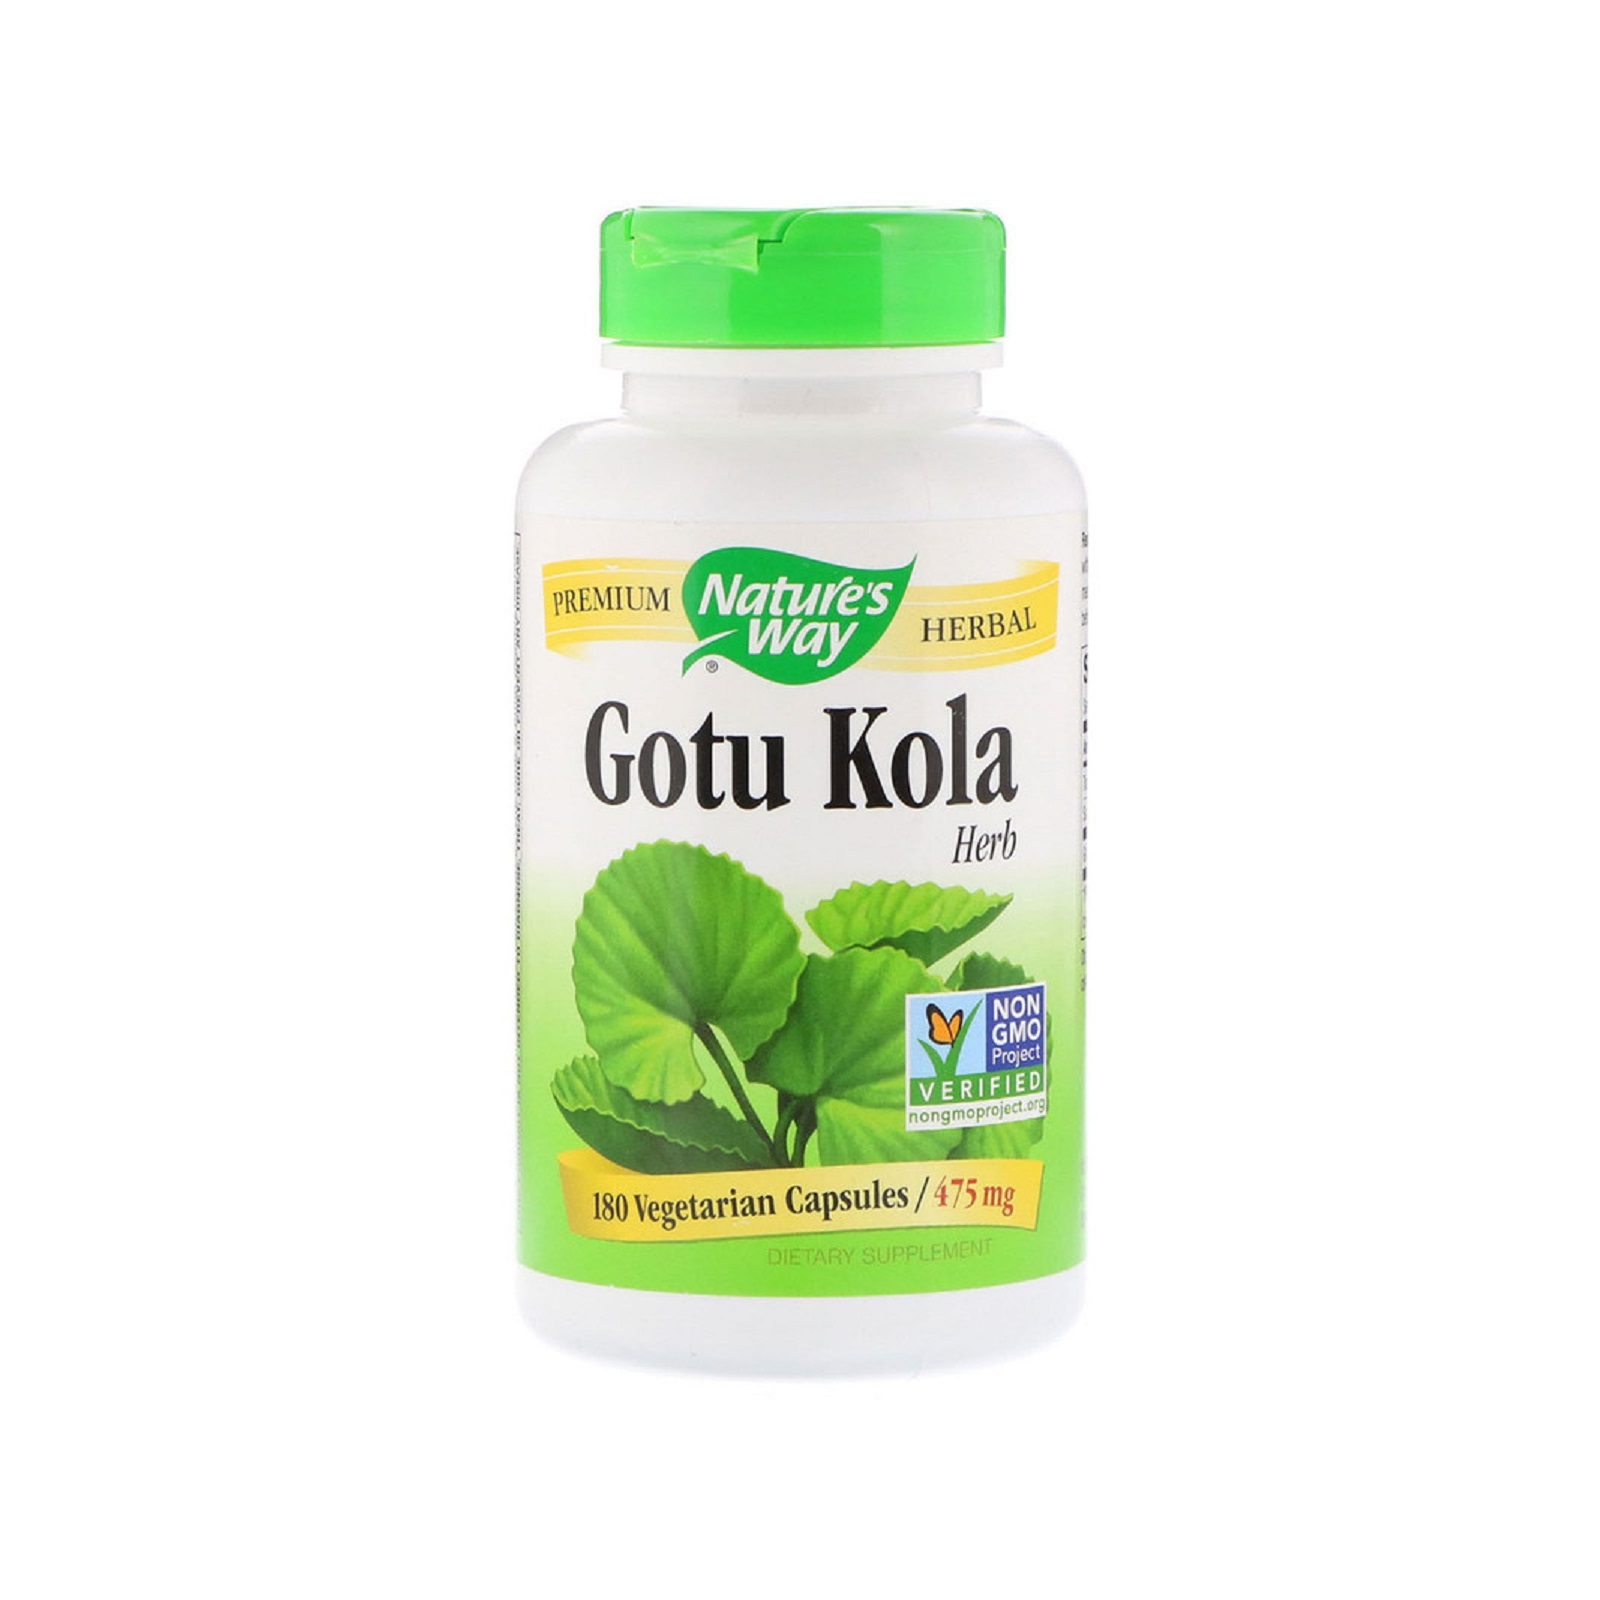 Травы Nature's Way Готу Кола, Gotu Kola Herb, 950 mg, 180 Капсул (NWY-14008)